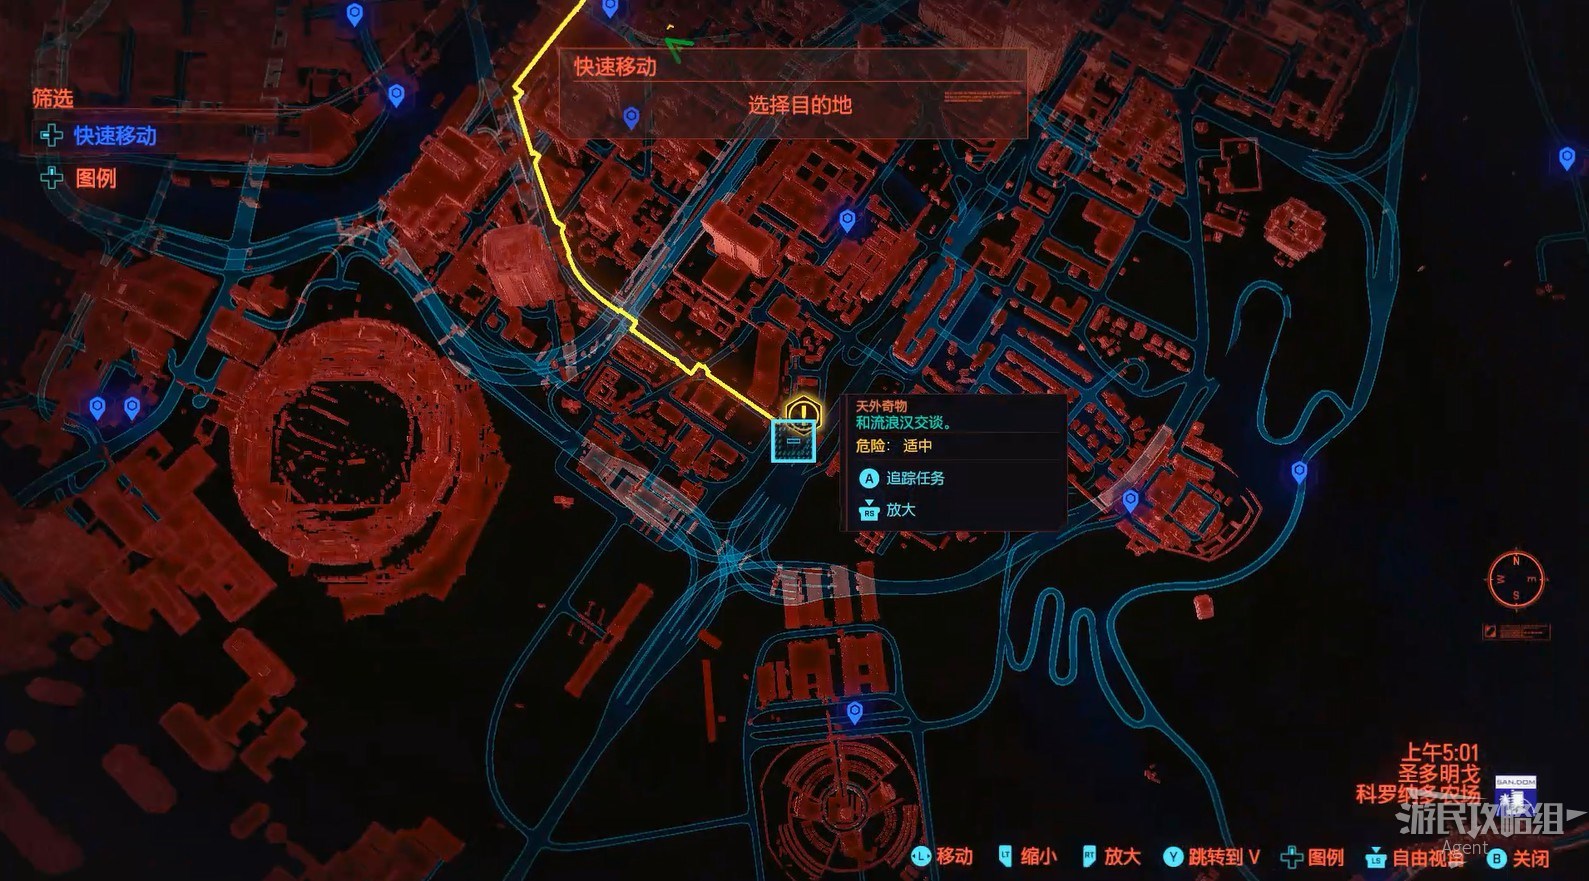 《電馭叛客2077》圖文攻略 主線流程、可選任務及重要支線攻略